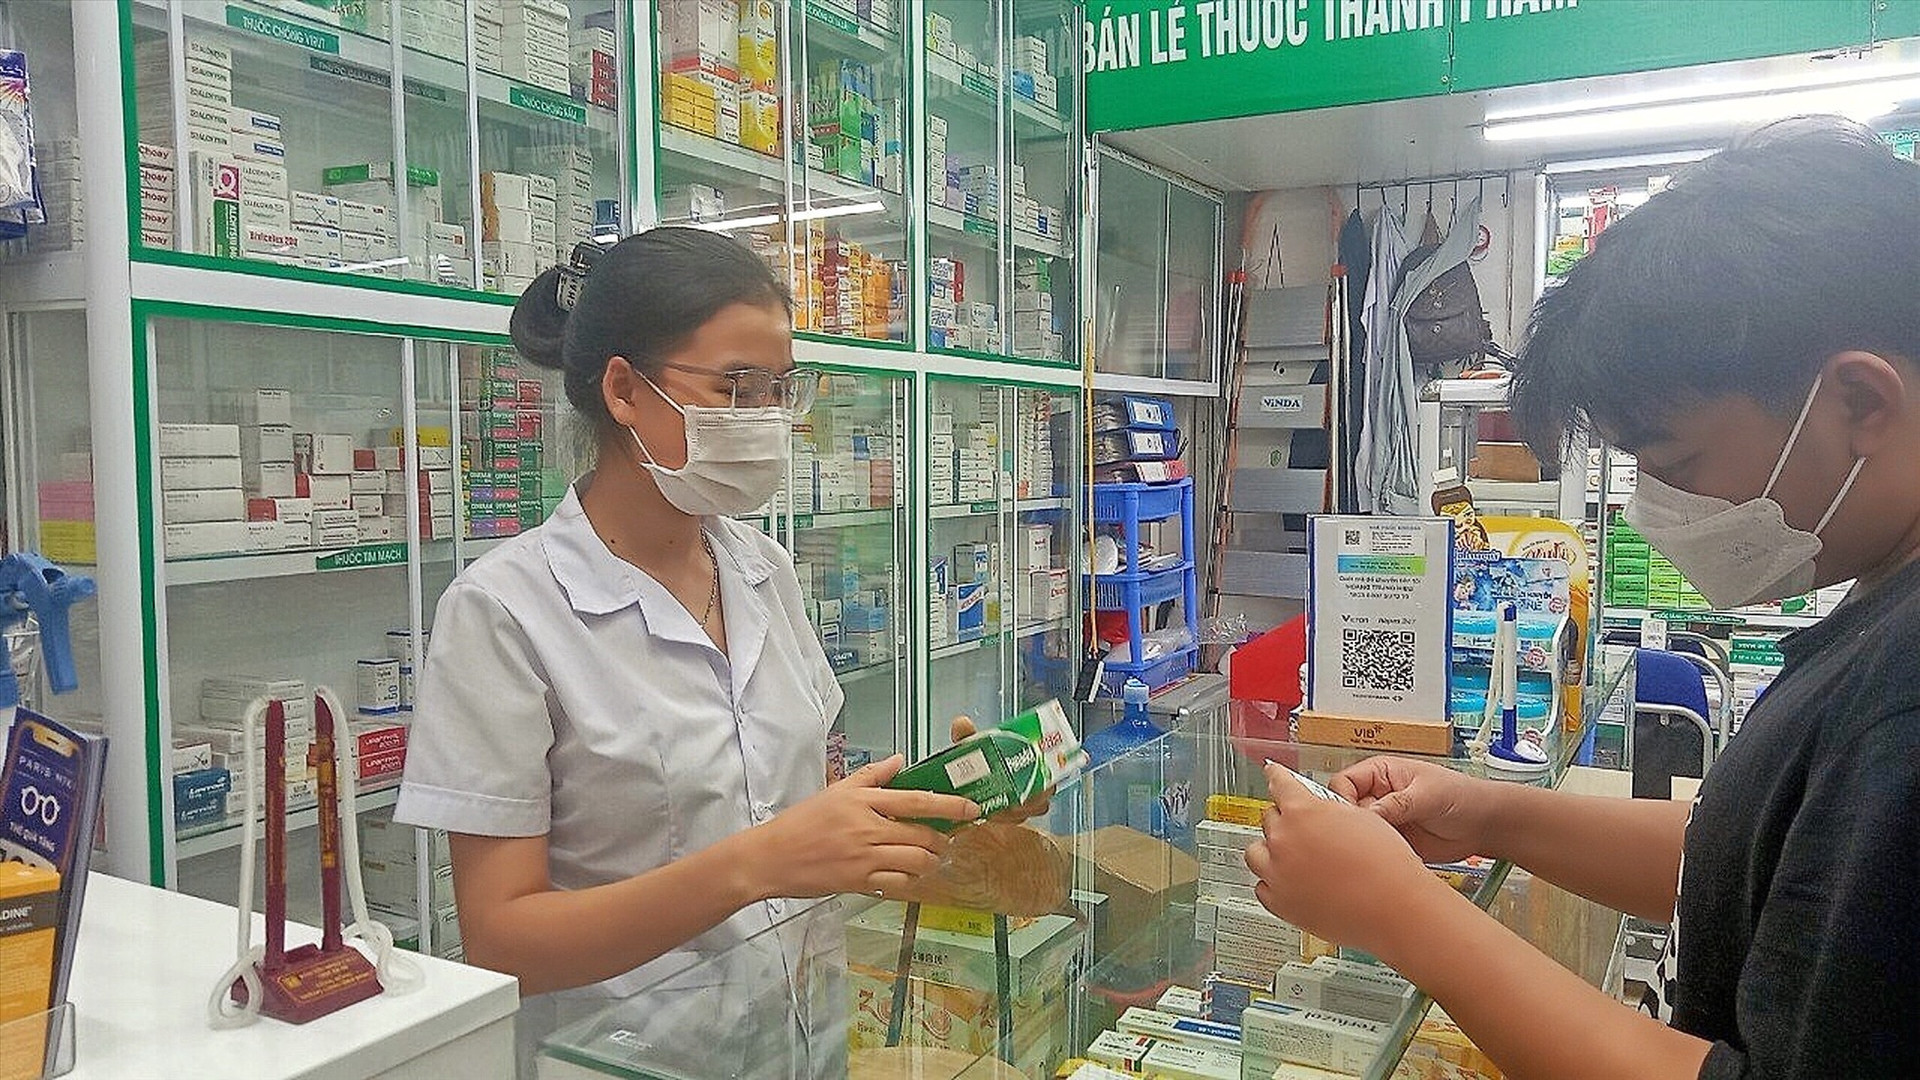 Bên hành lang bệnh viện: Nhà thuốc ở Hà Nội thiếu dược sĩ trầm trọng